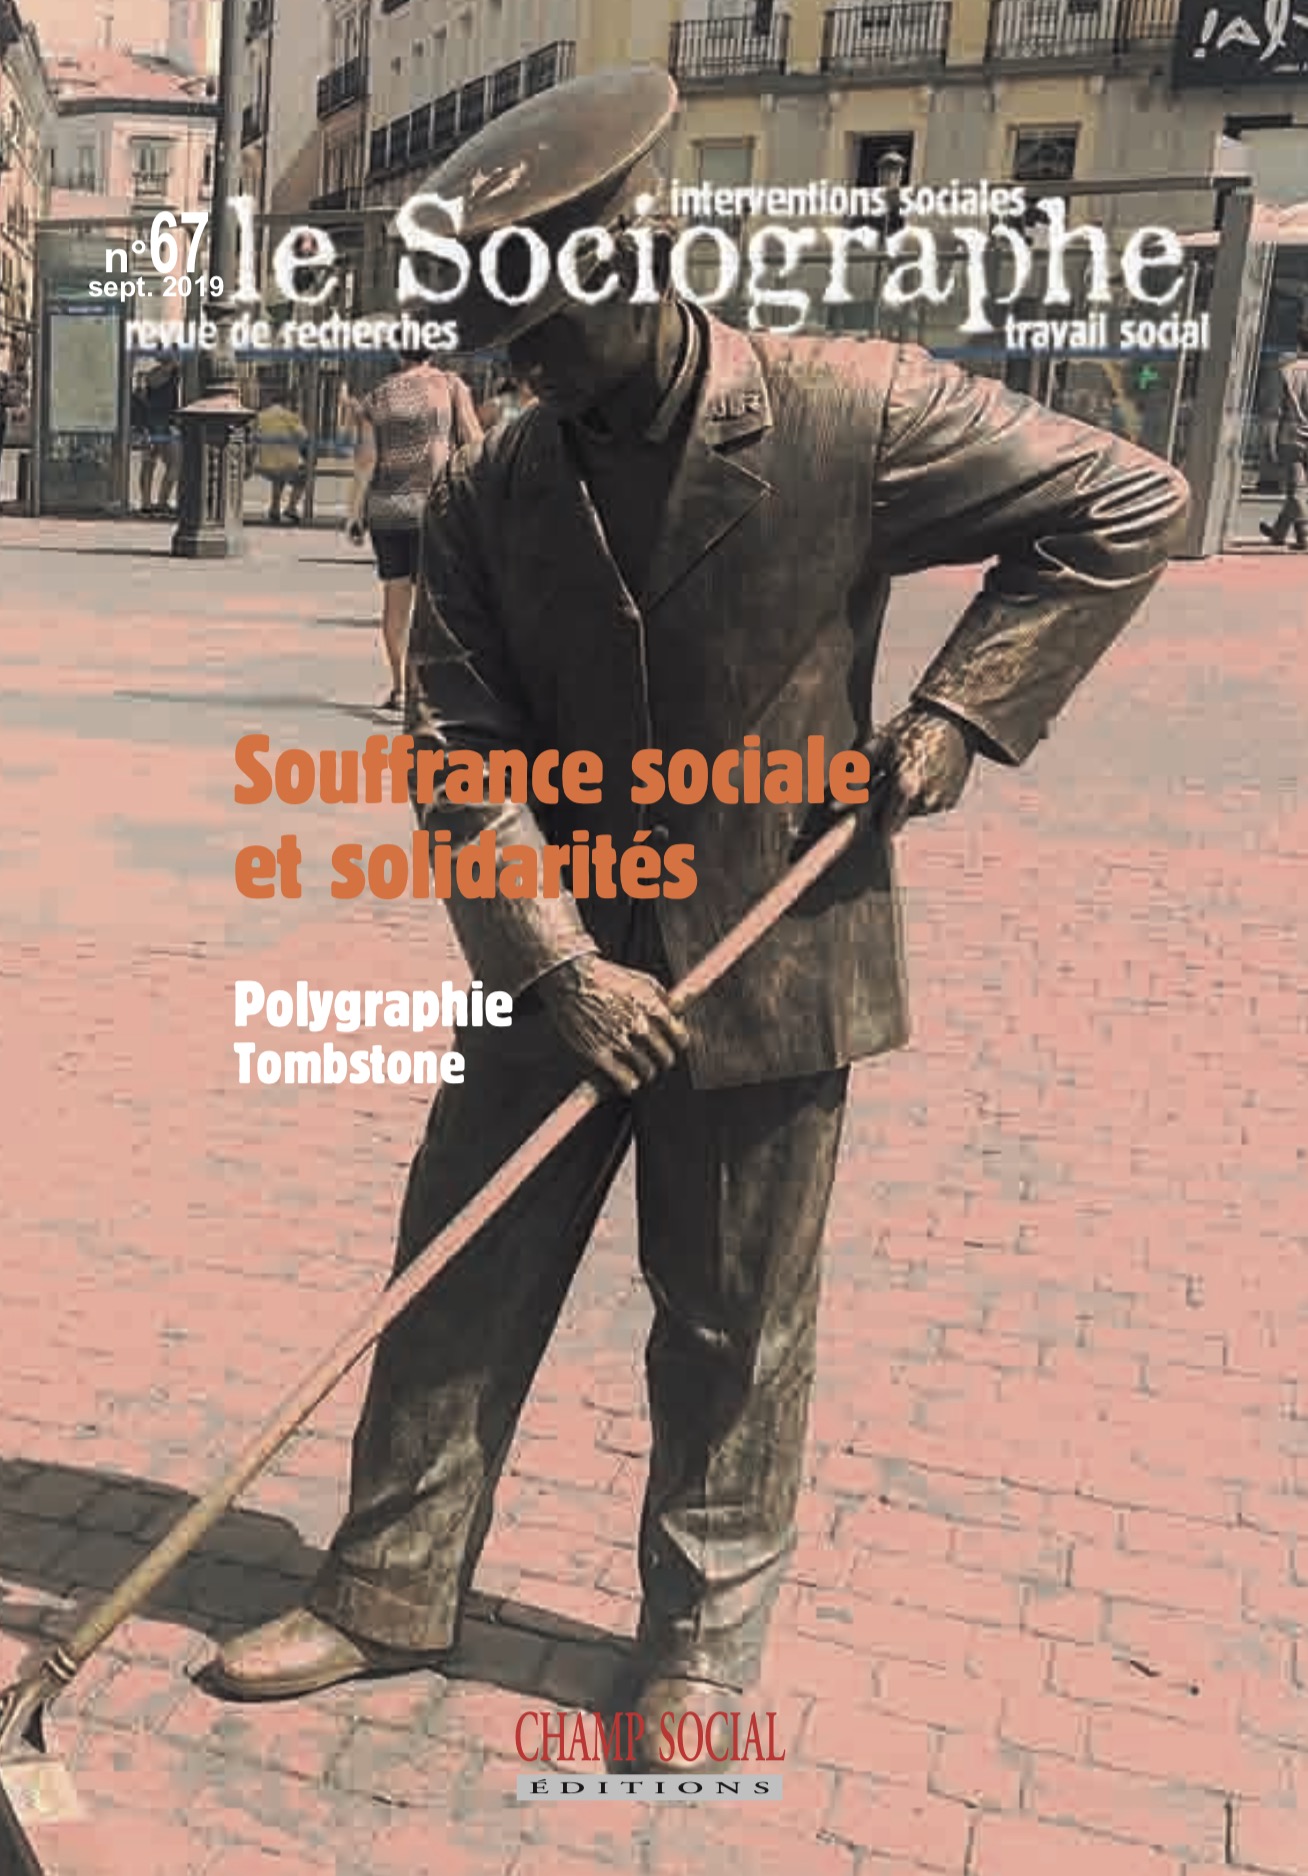 Le Sociographe n°67 / Souffrance Sociale et solidarités